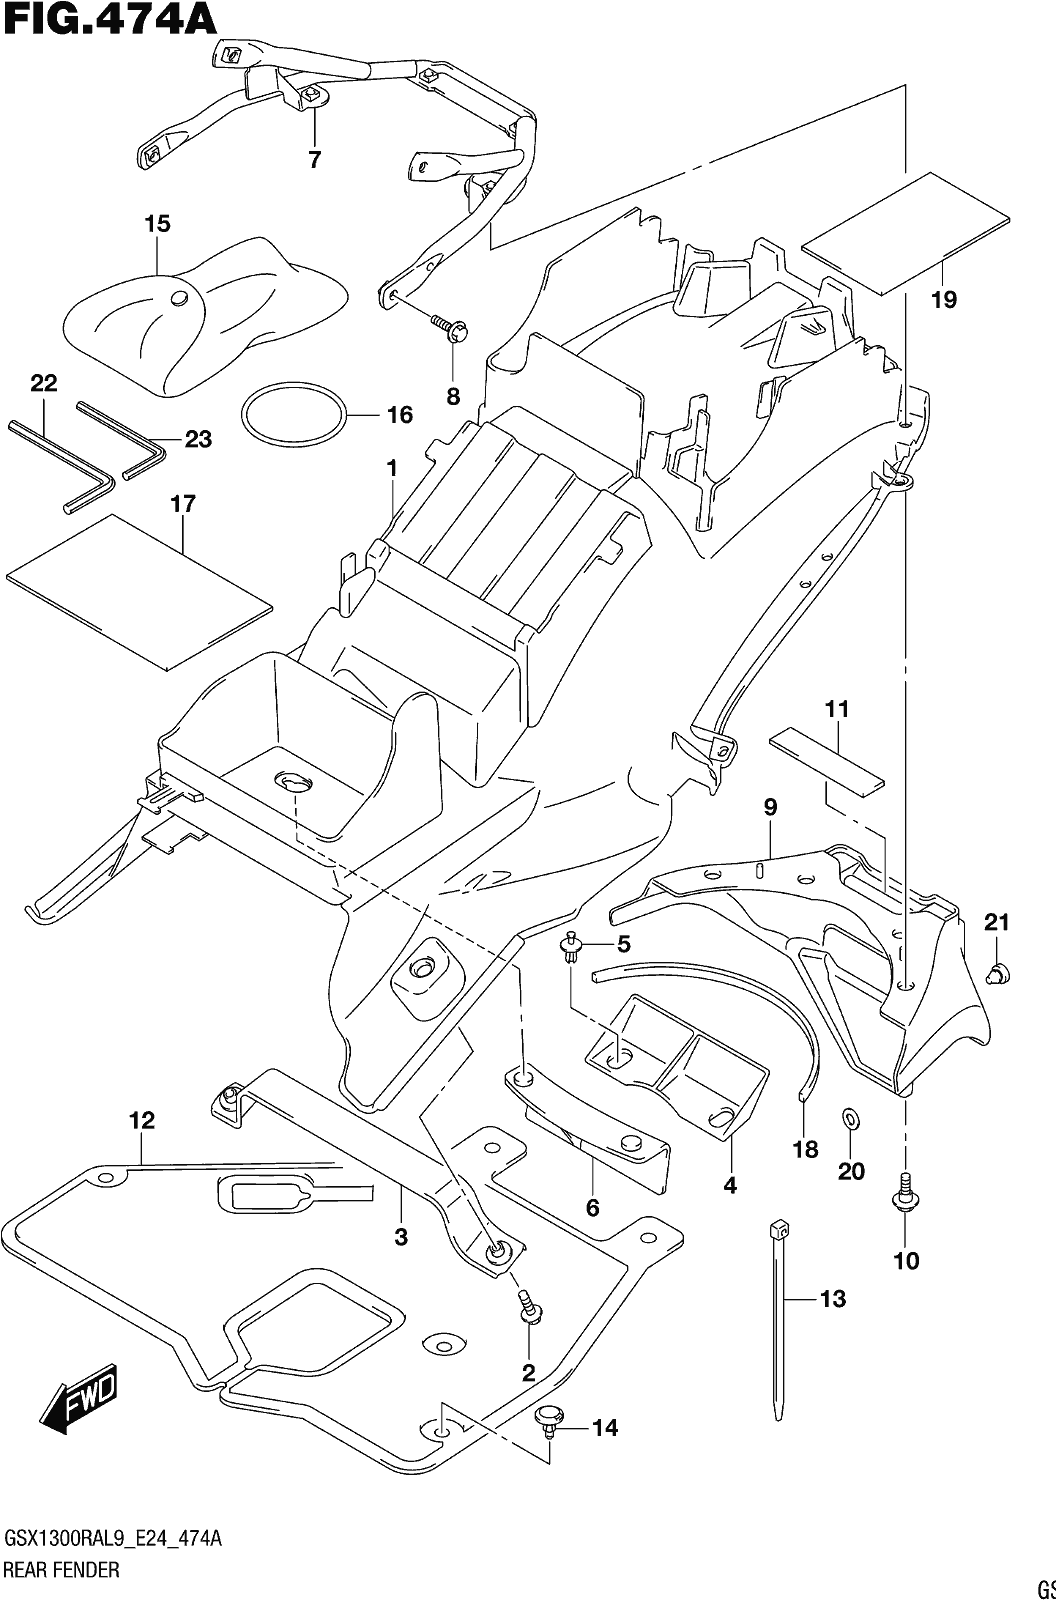 Fig.474a Rear Fender